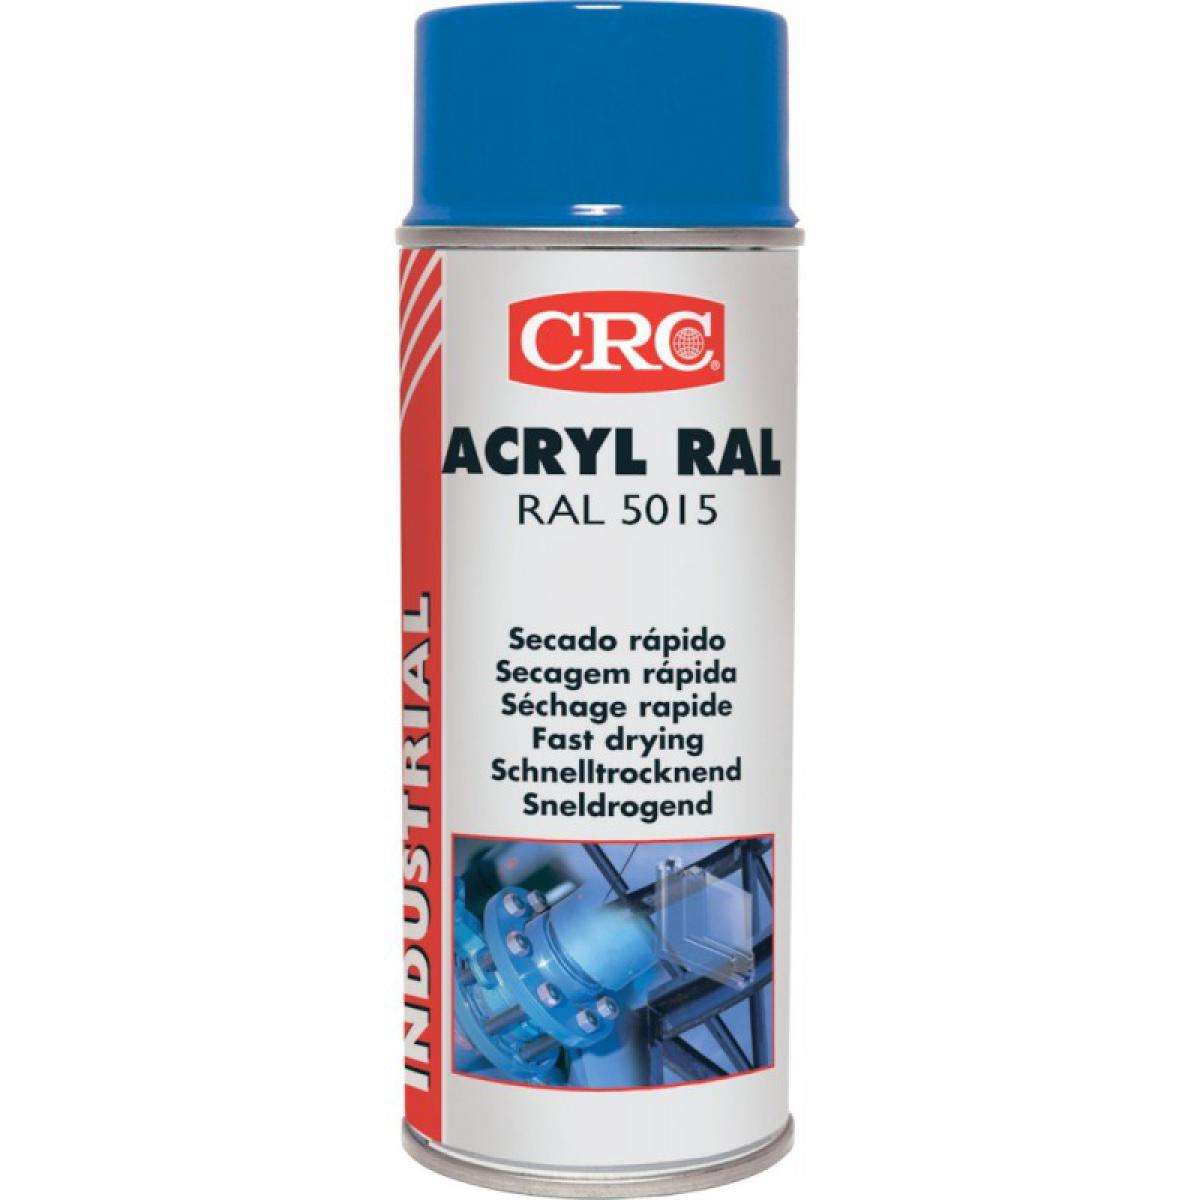 Crc - Acrylique RAL 5015 Bleu ciel 400ml aérosol (Par 6) - Pointes à tracer, cordeaux, marquage